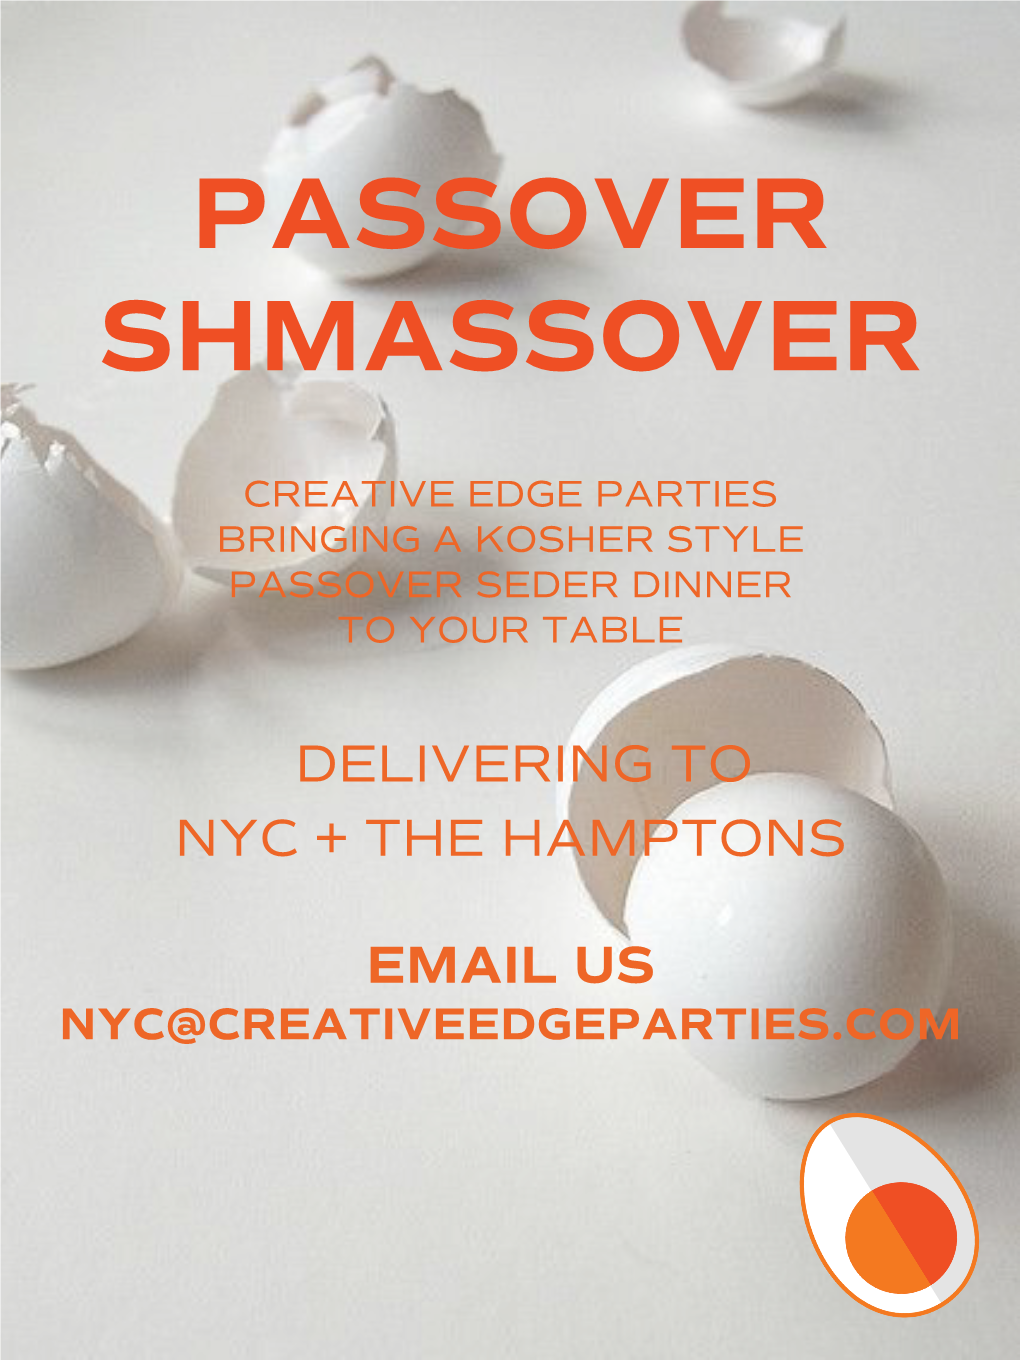 Passover Shmassover